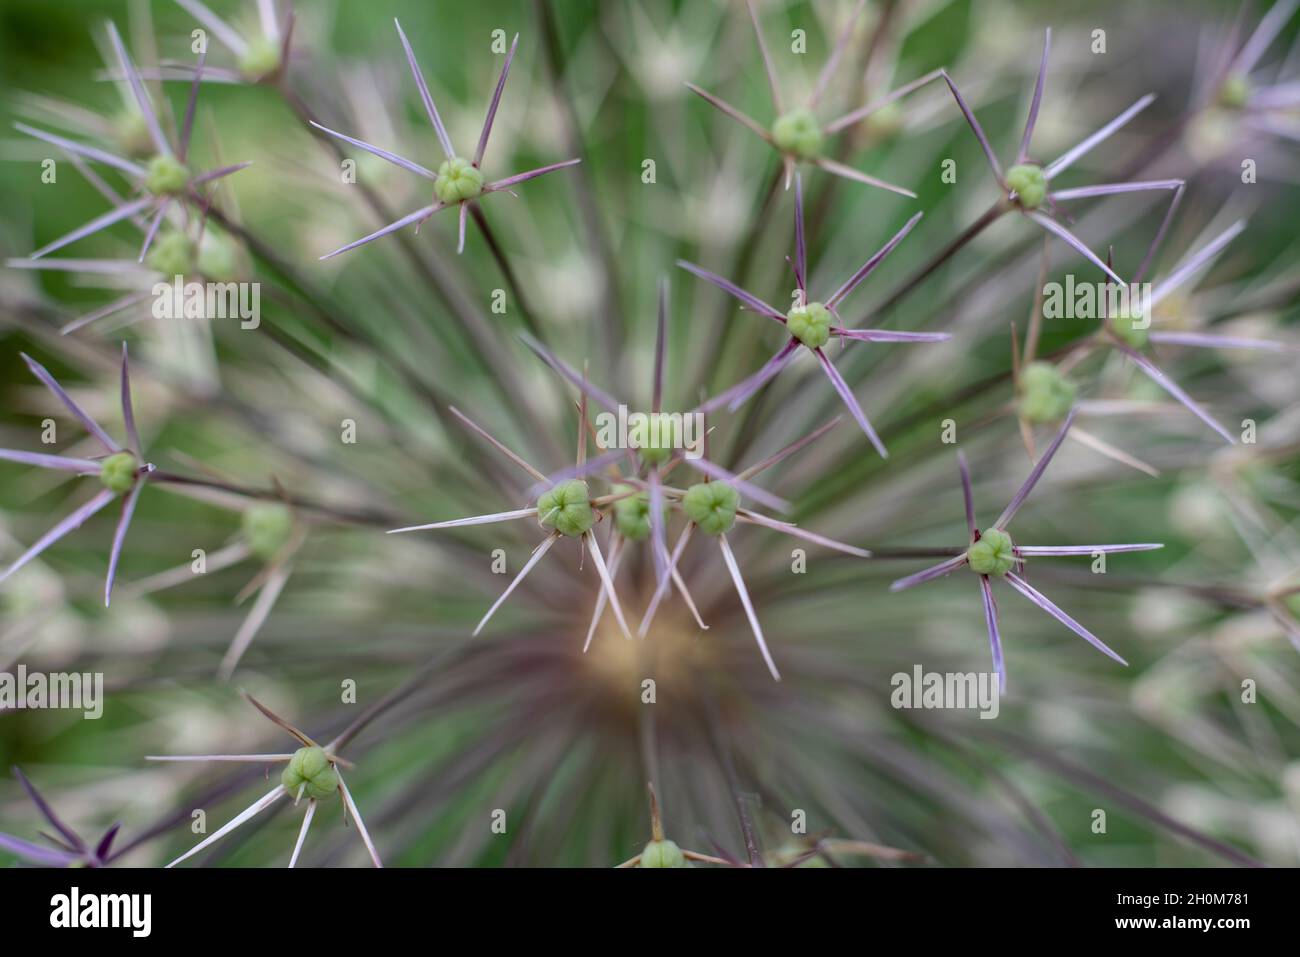 primer plano de la semilla verde de maduración de una flor ornamental de allium Foto de stock